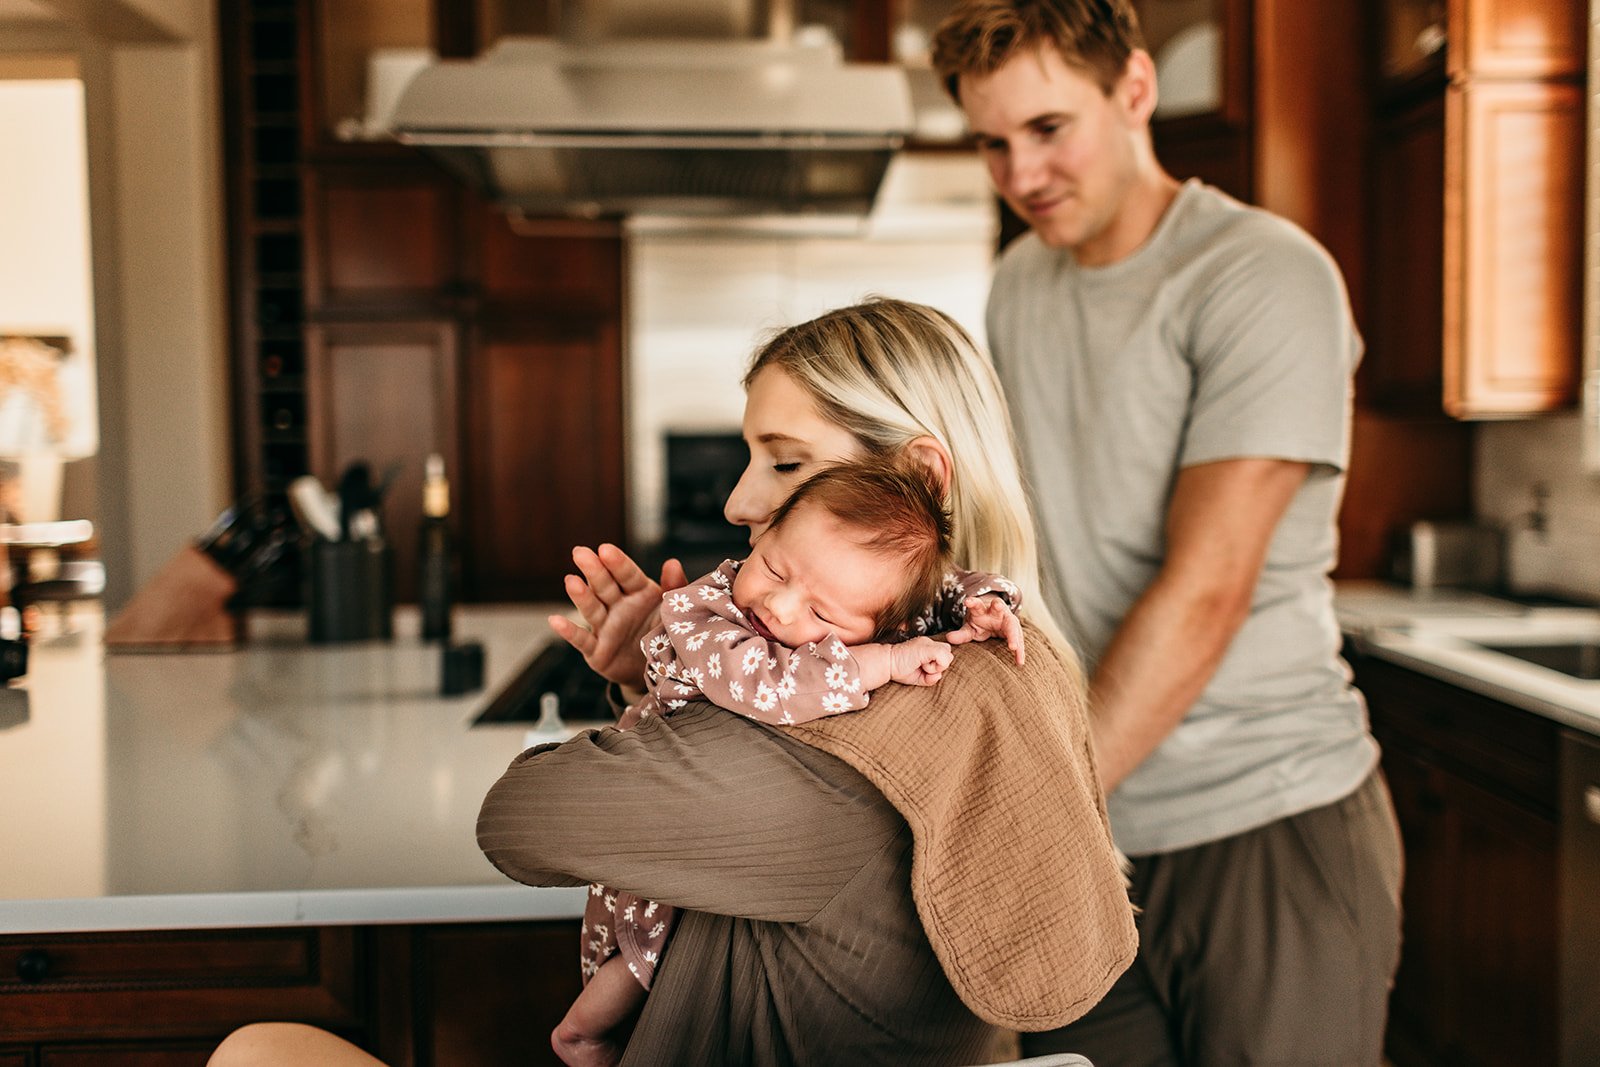 newborn-baby-embrace-kitchen-home.jpg